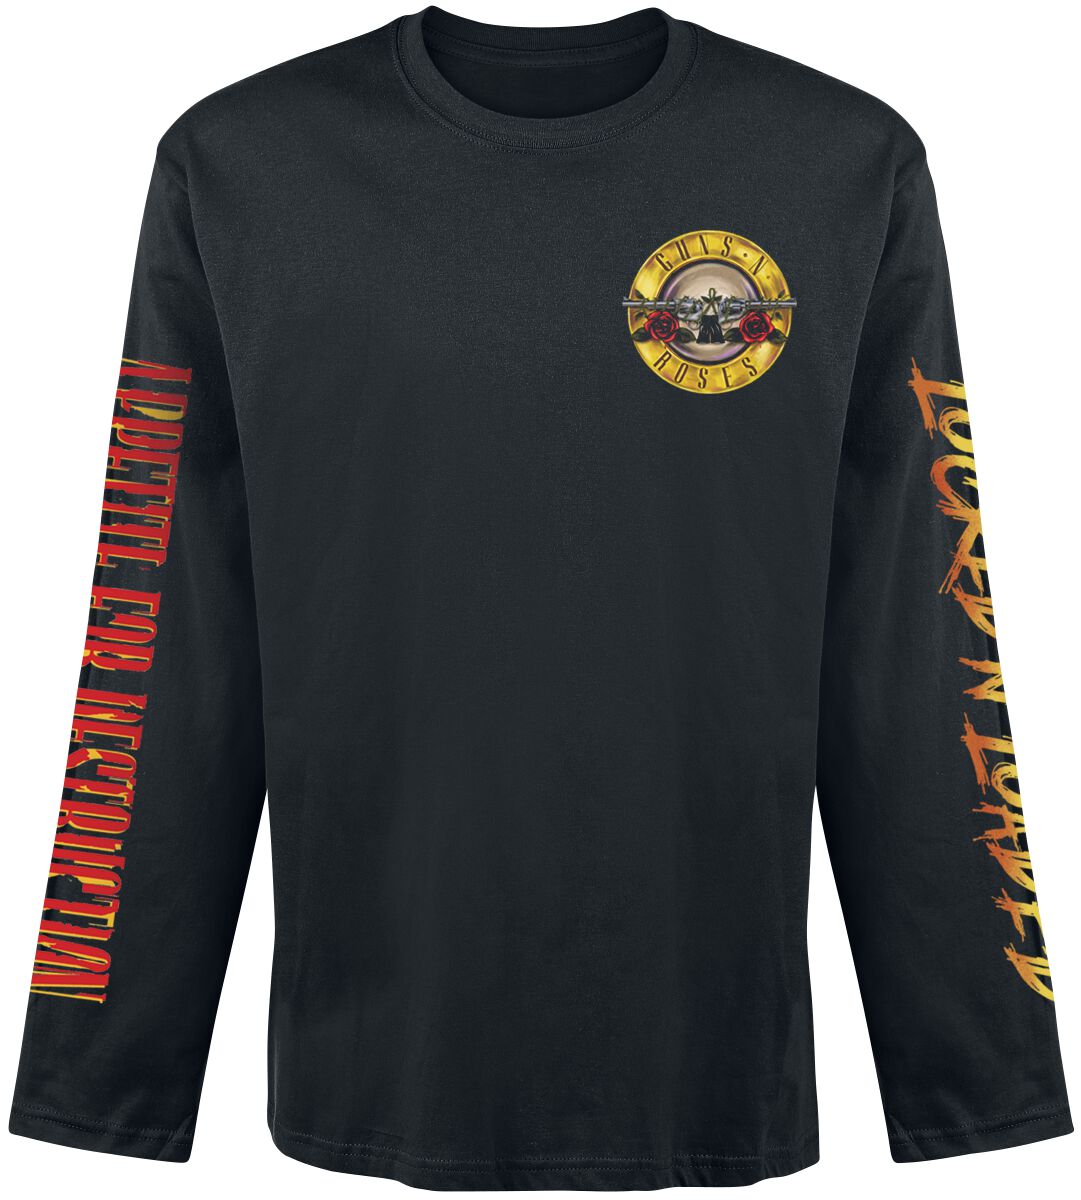 Guns N` Roses Langarmshirt - Locked N` Loaded - S bis XXL - für Männer - Größe M - schwarz  - Lizenziertes Merchandise!